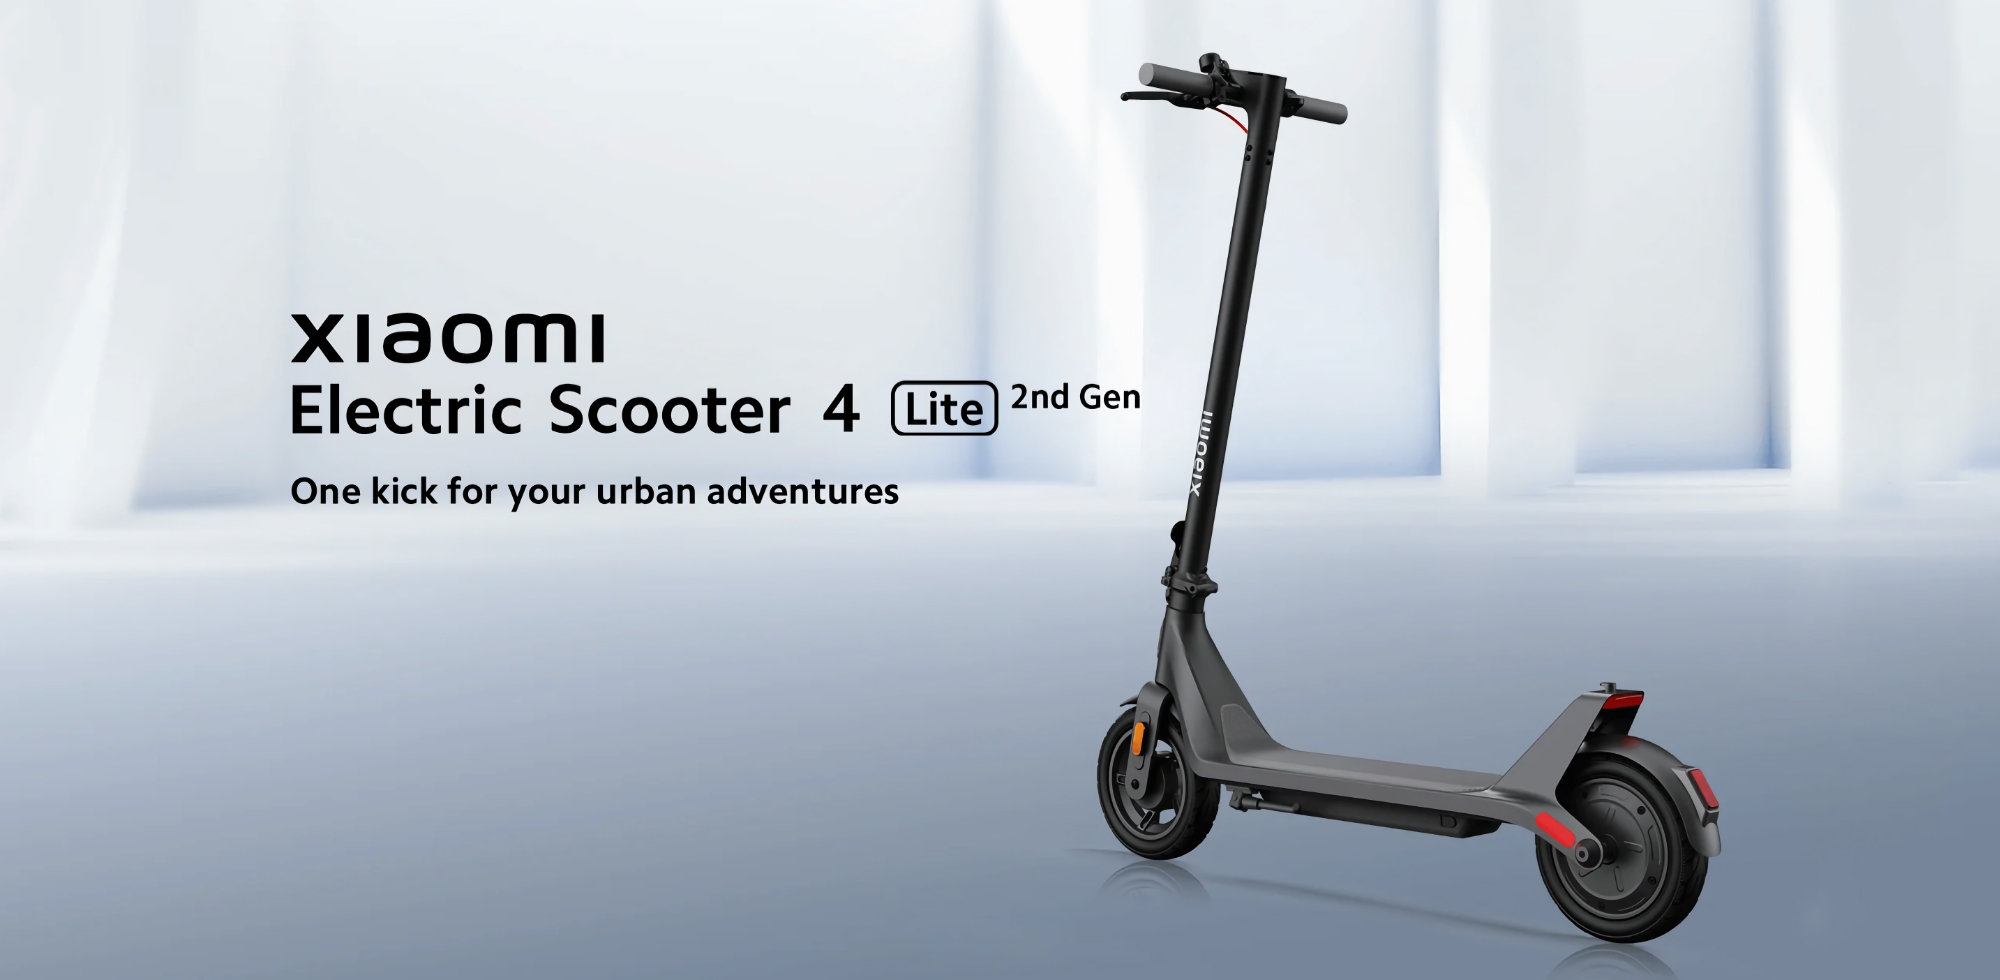 Xiaomi Electric Scooter 4 Lite (2nd Gen) con una autonomía de hasta 25 km ha debutado en Europa